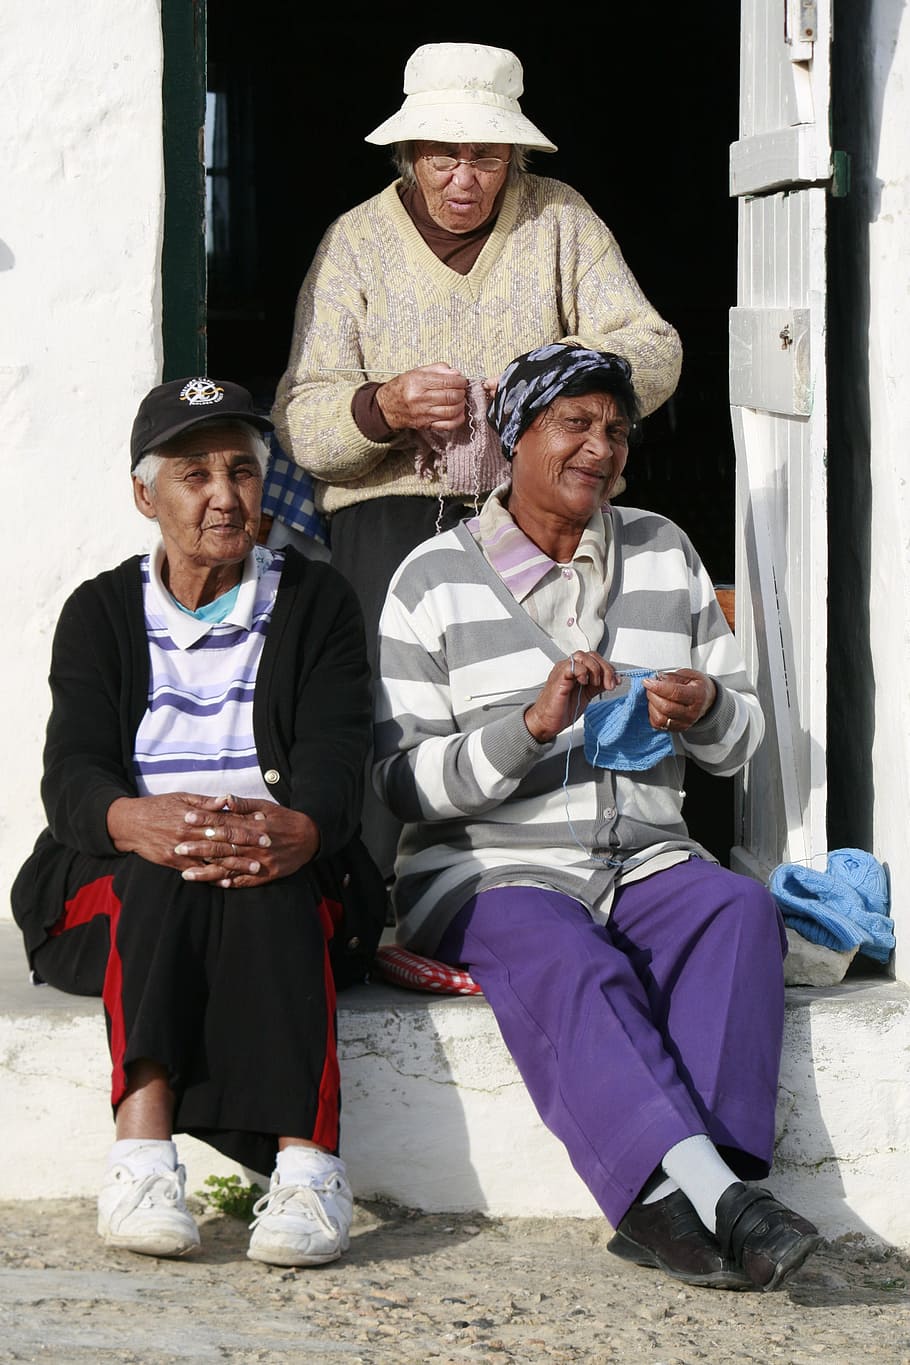 Arniston, vila de pescadores, velho, senhoras, velhinhas, tricô, ao ar livre, aposentado, passatempo, pessoas